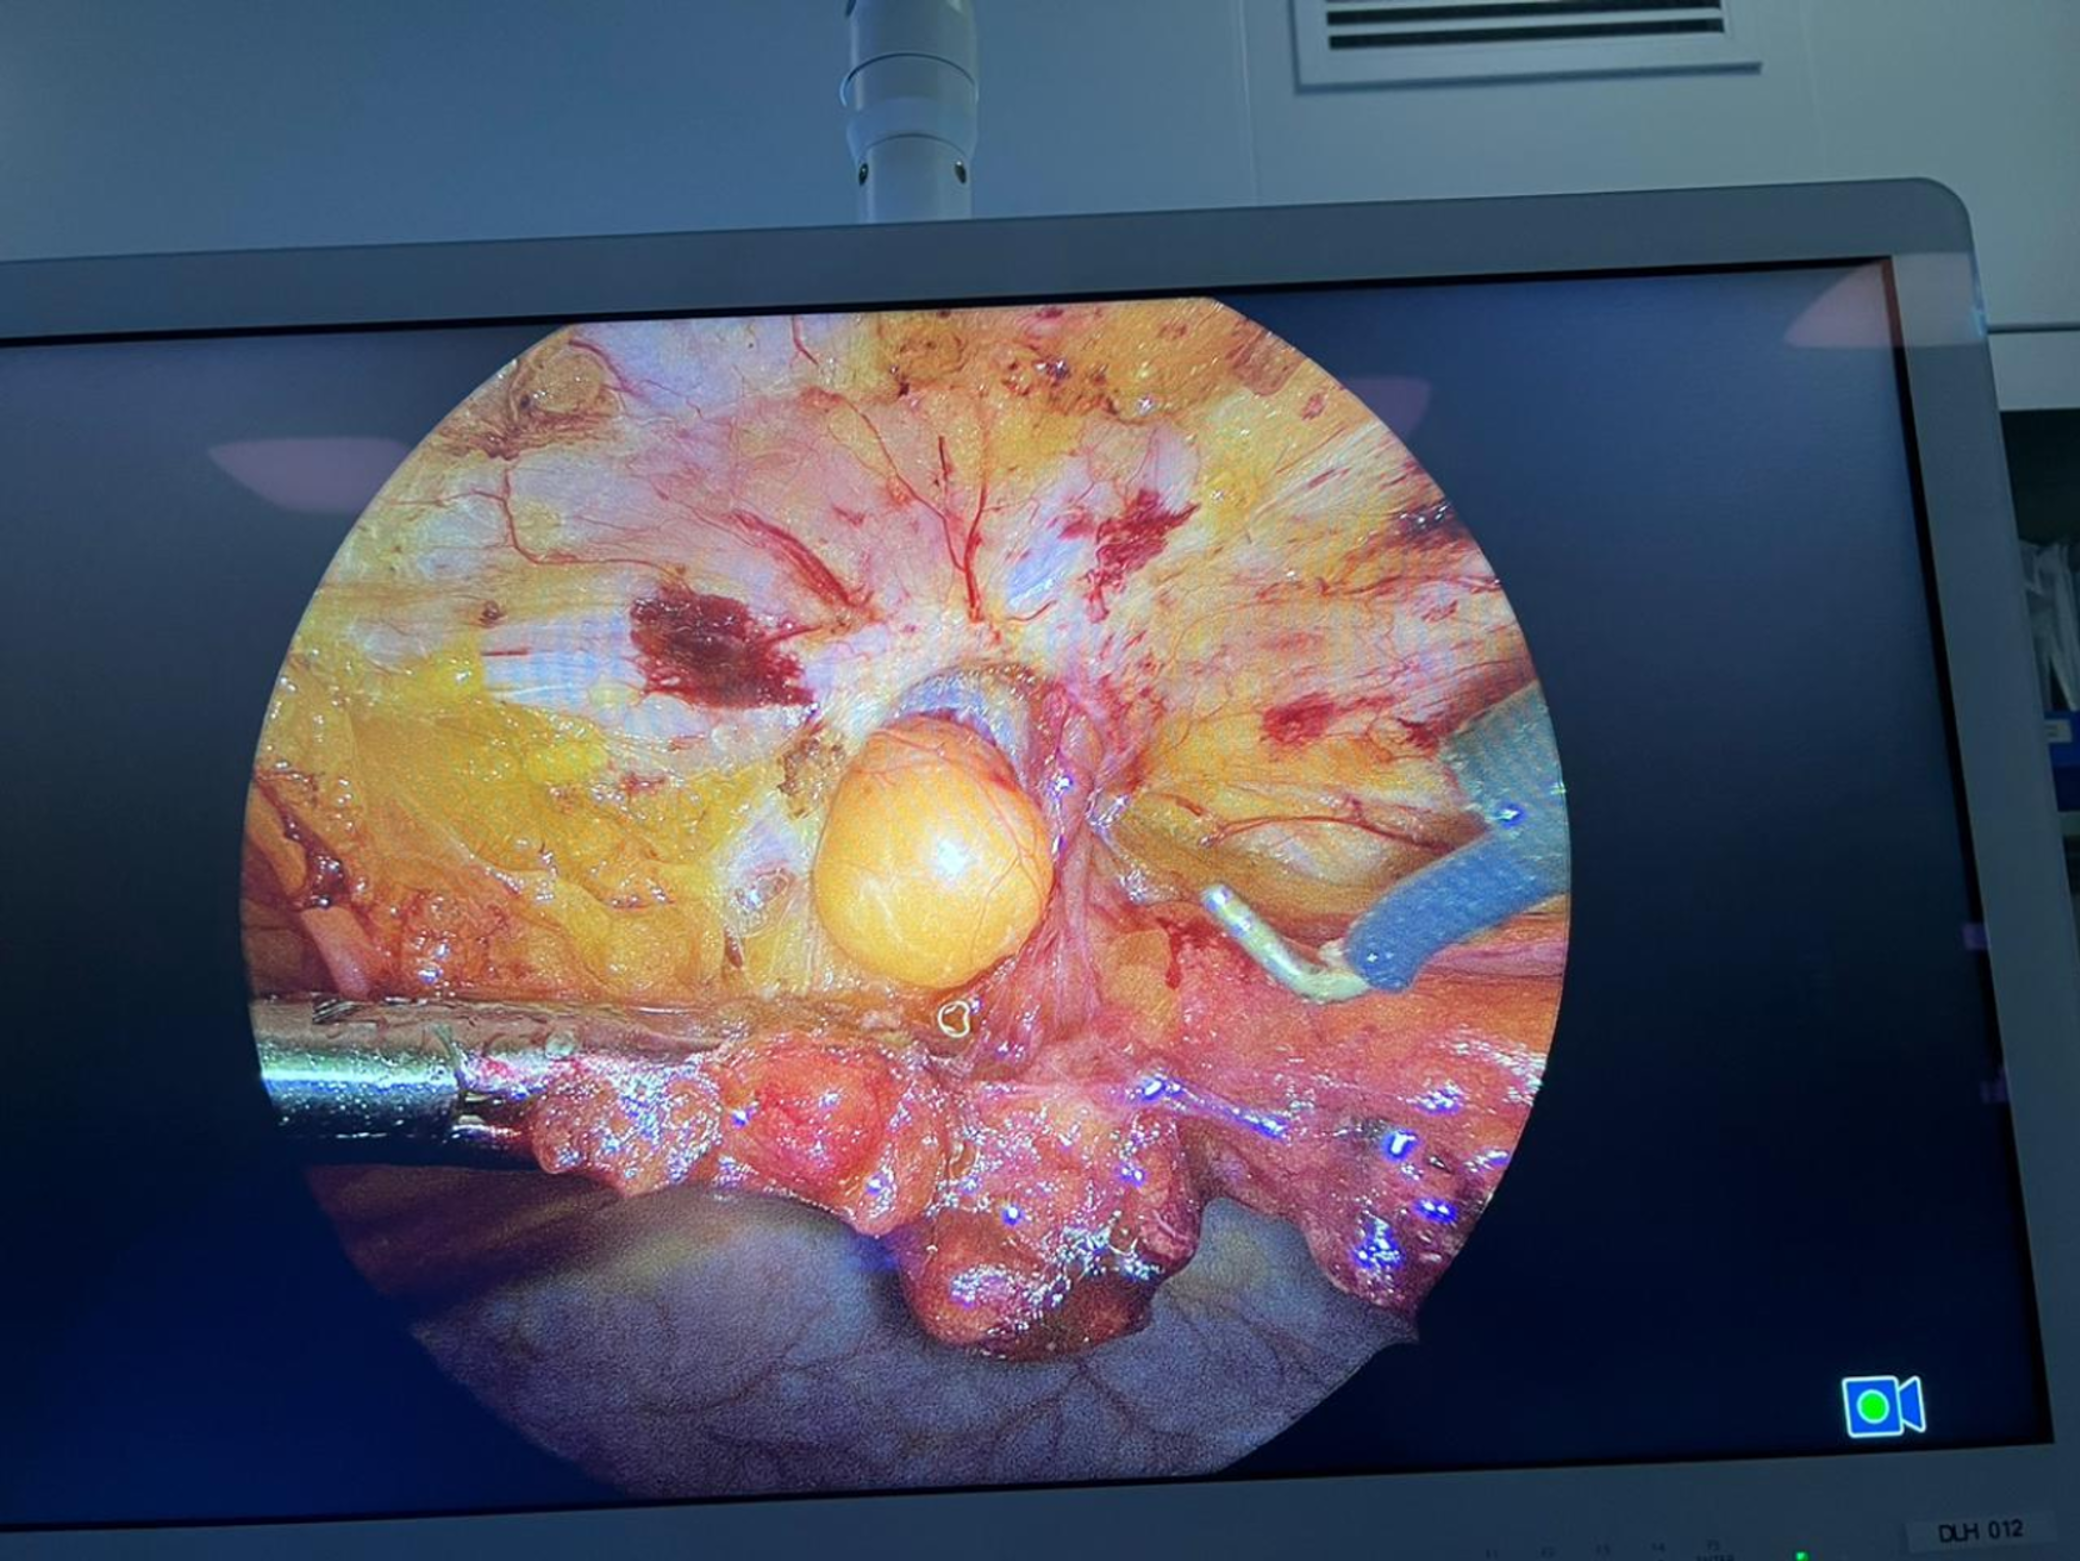 Laparoscopic umbilical hernia repair